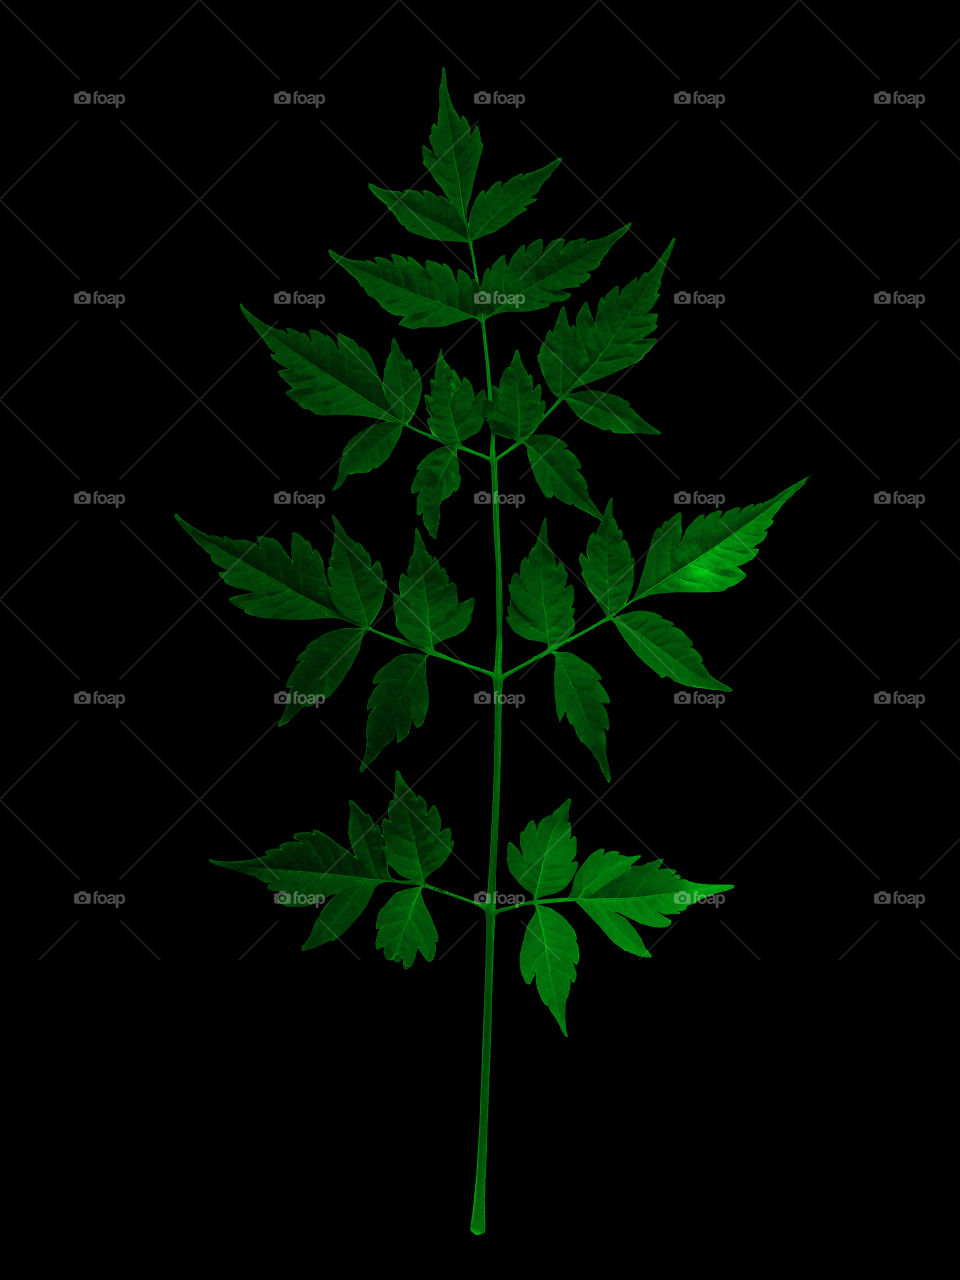 Green symmetry leaf